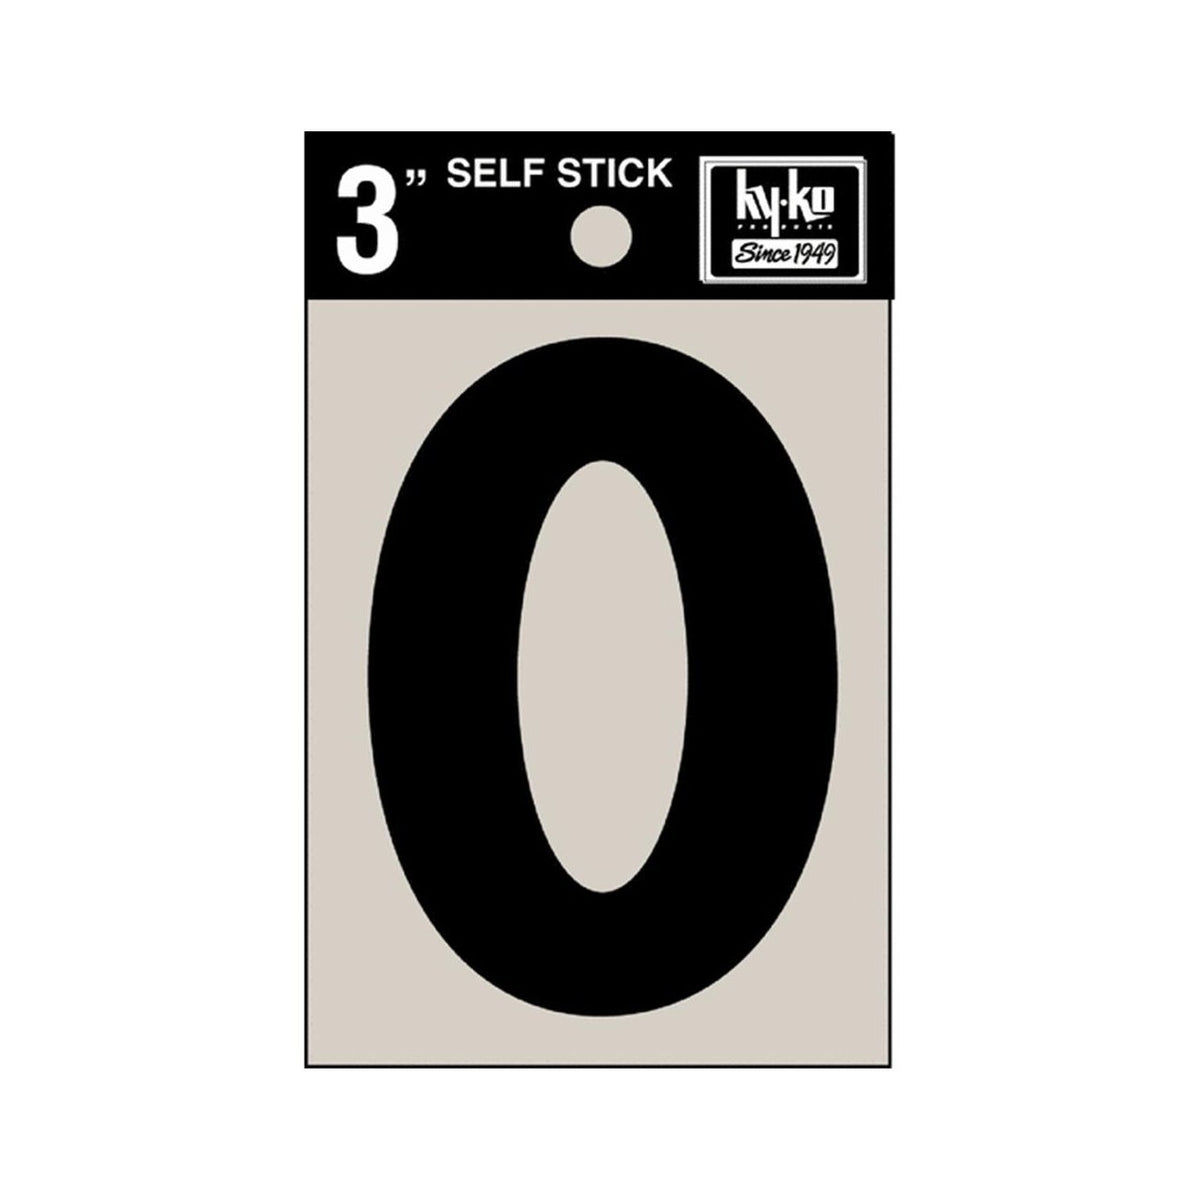 Hy-Ko 30410 Self-Stick Vinyl Die-Cut Number 0 Sign, 3", Black